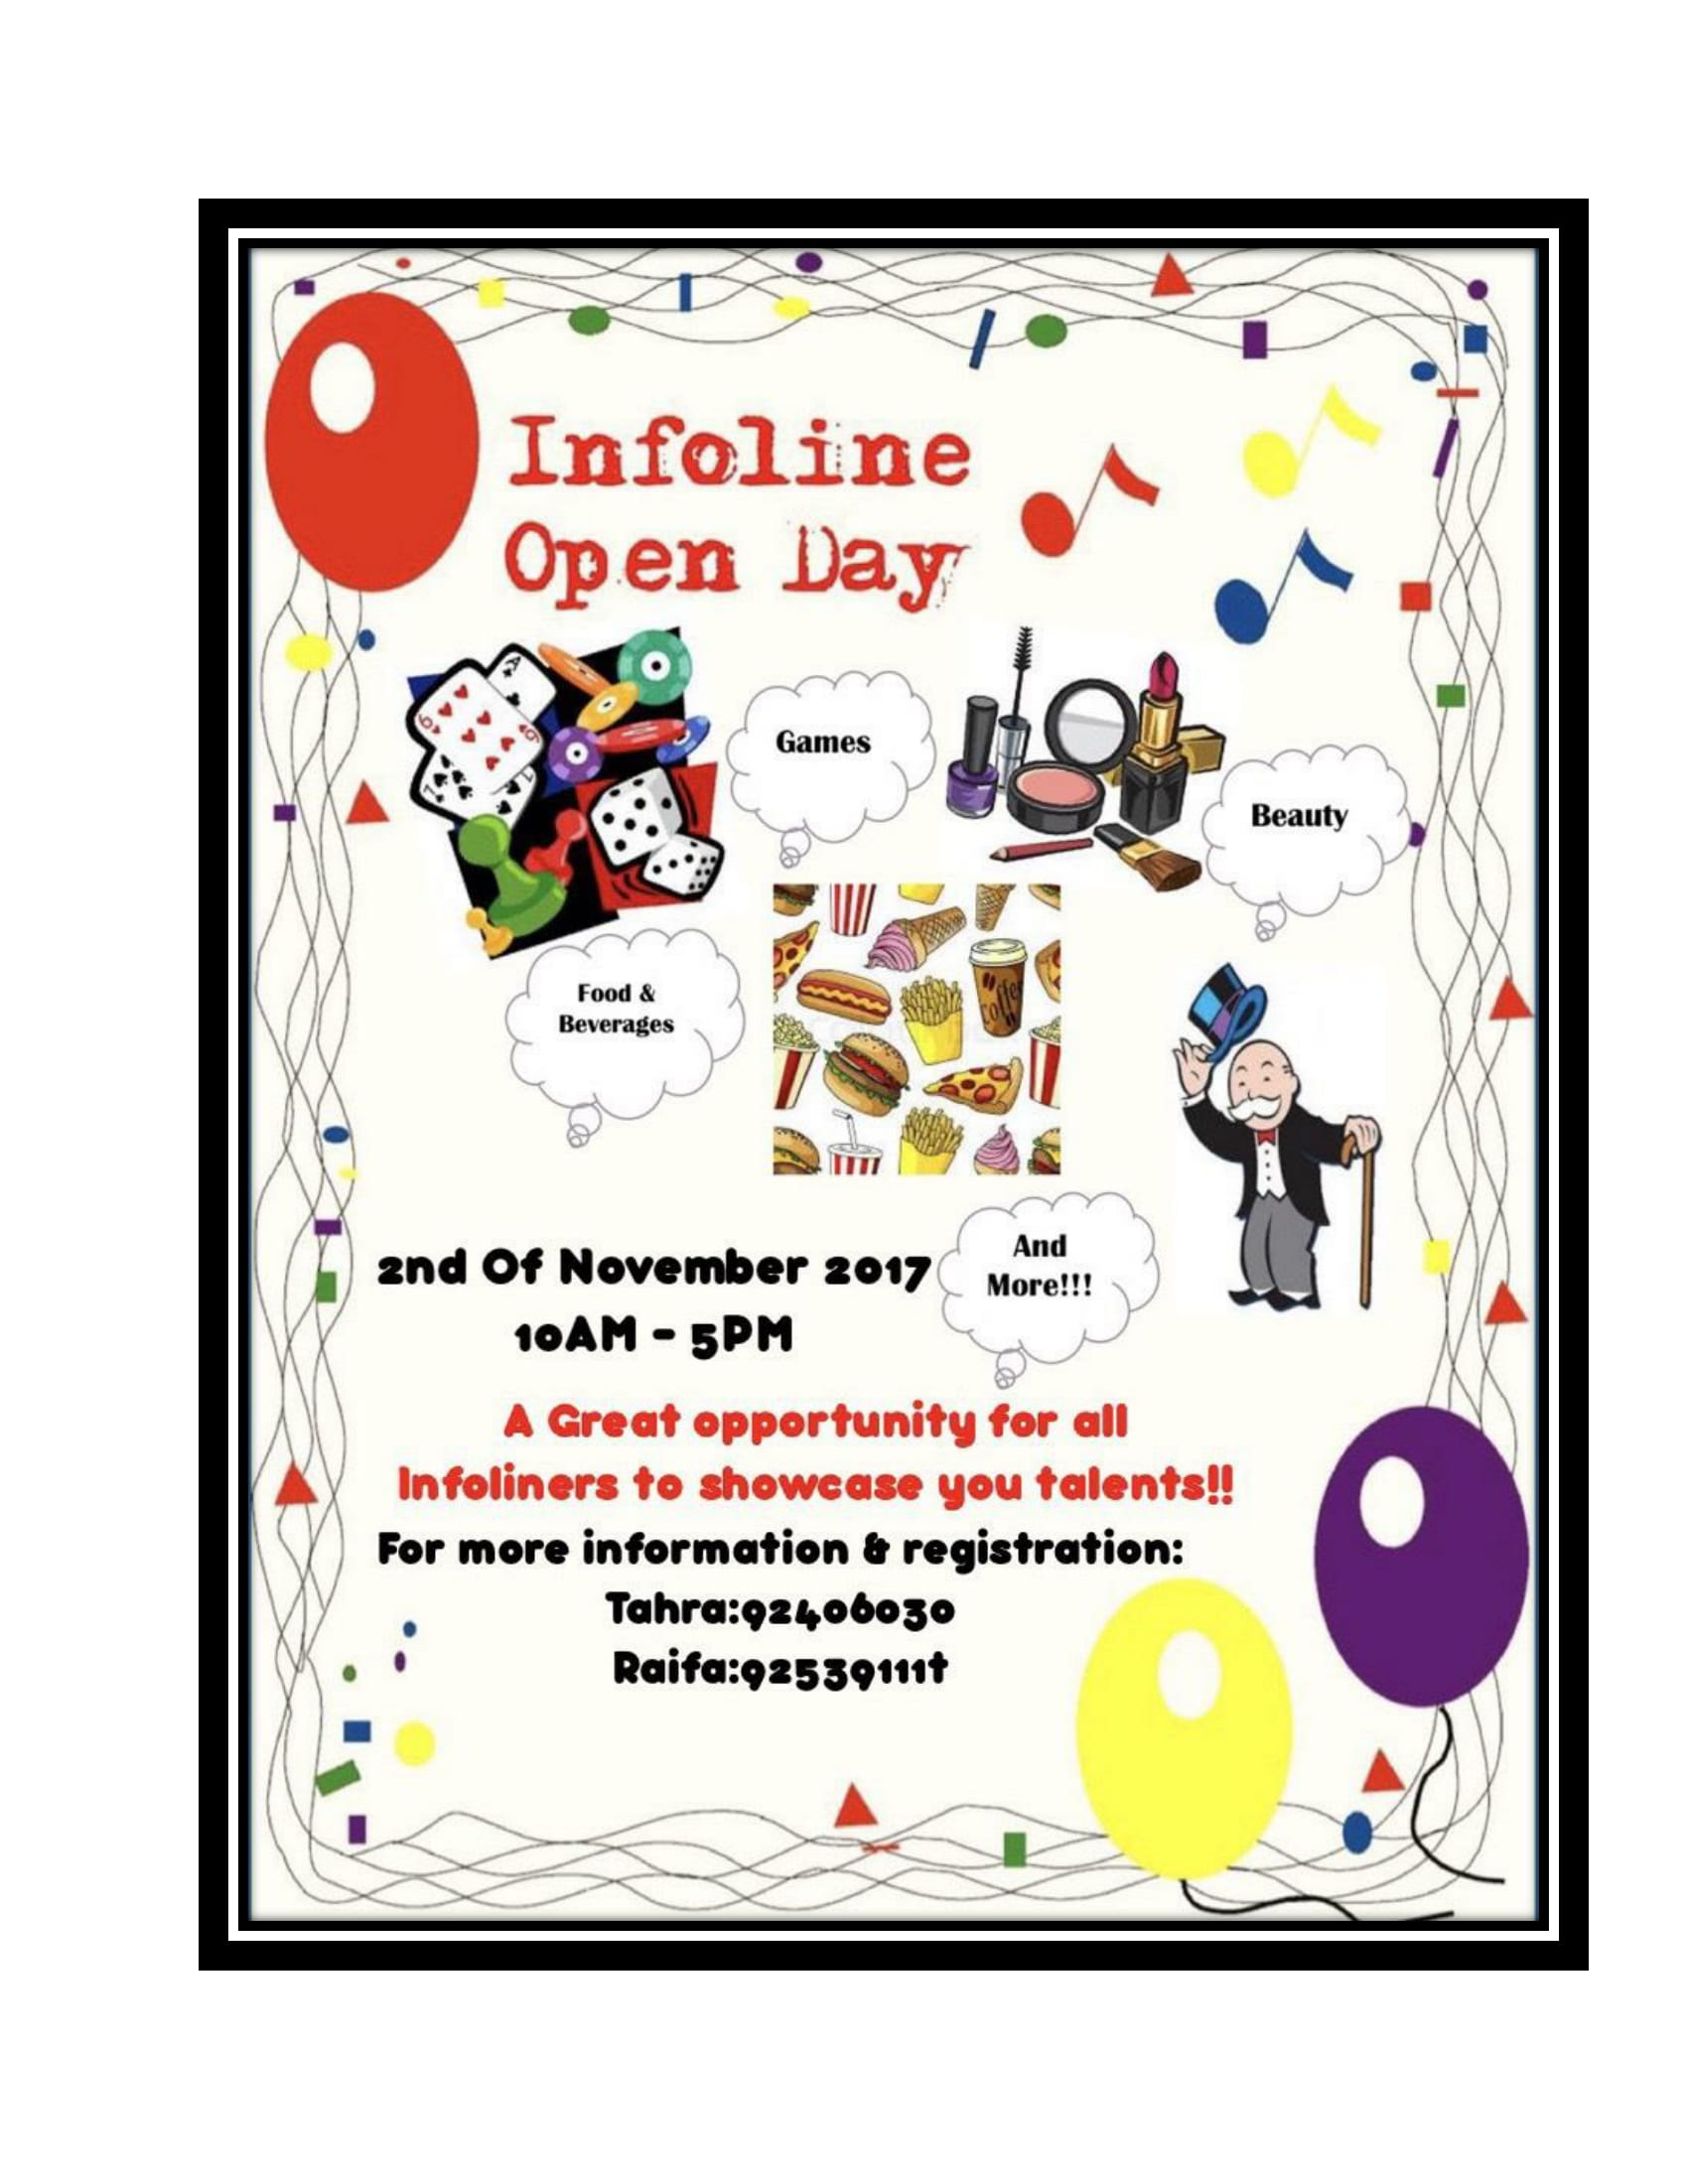 Infoline organises Open Day